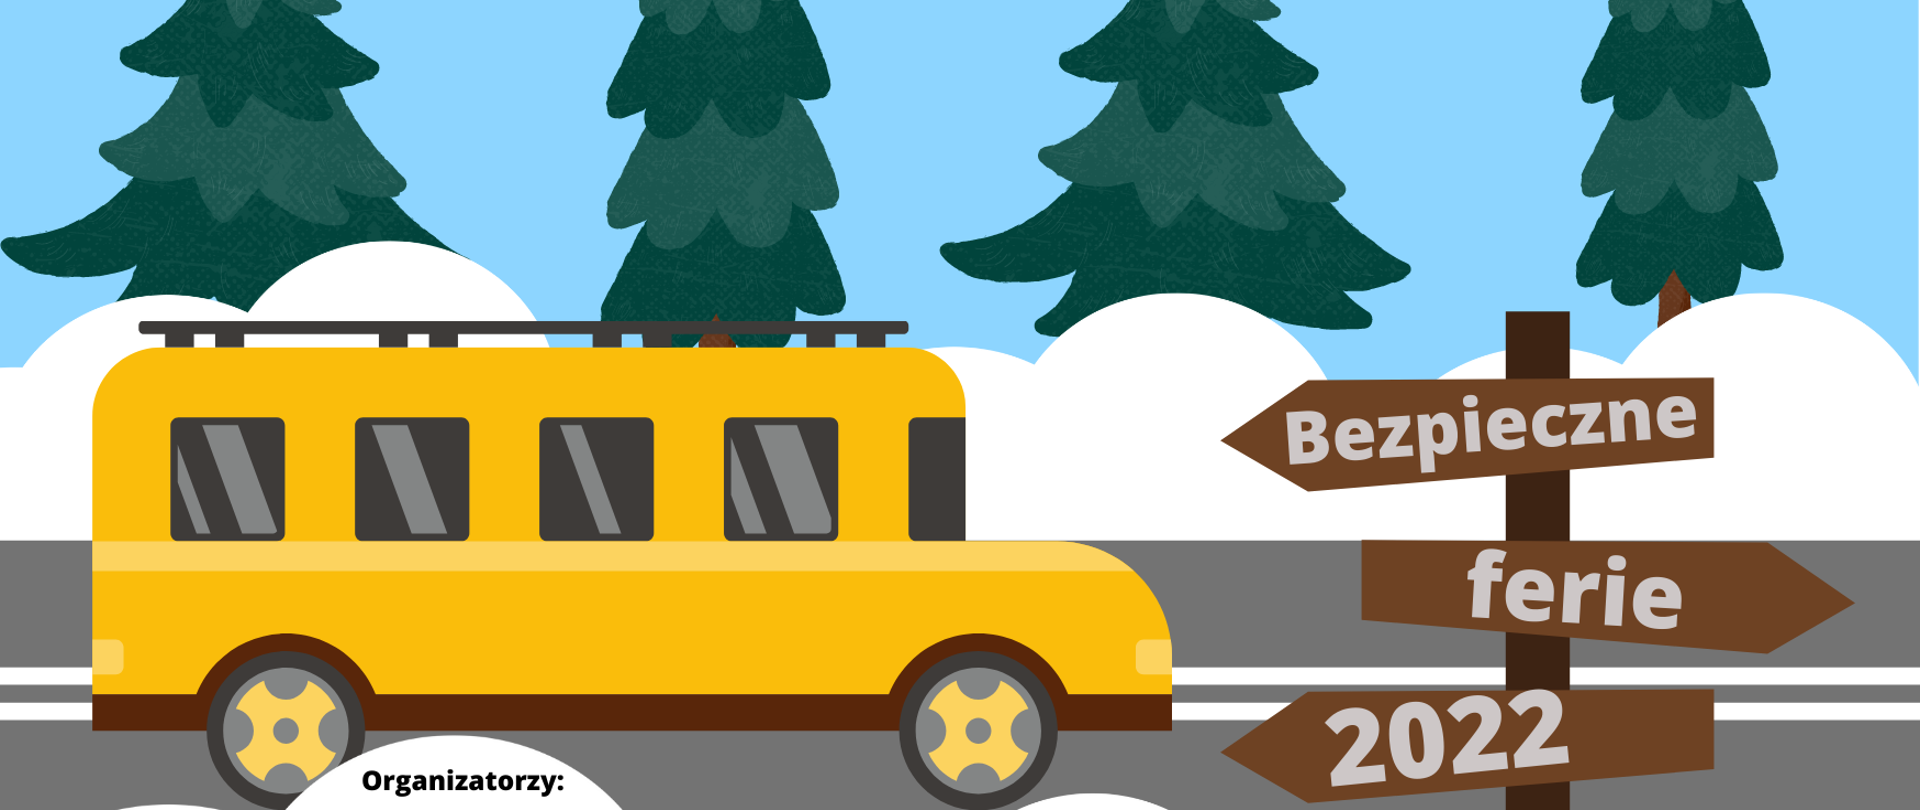 Plakat Bezpieczne ferie 2022, żółty autobus w zimowej scenerii